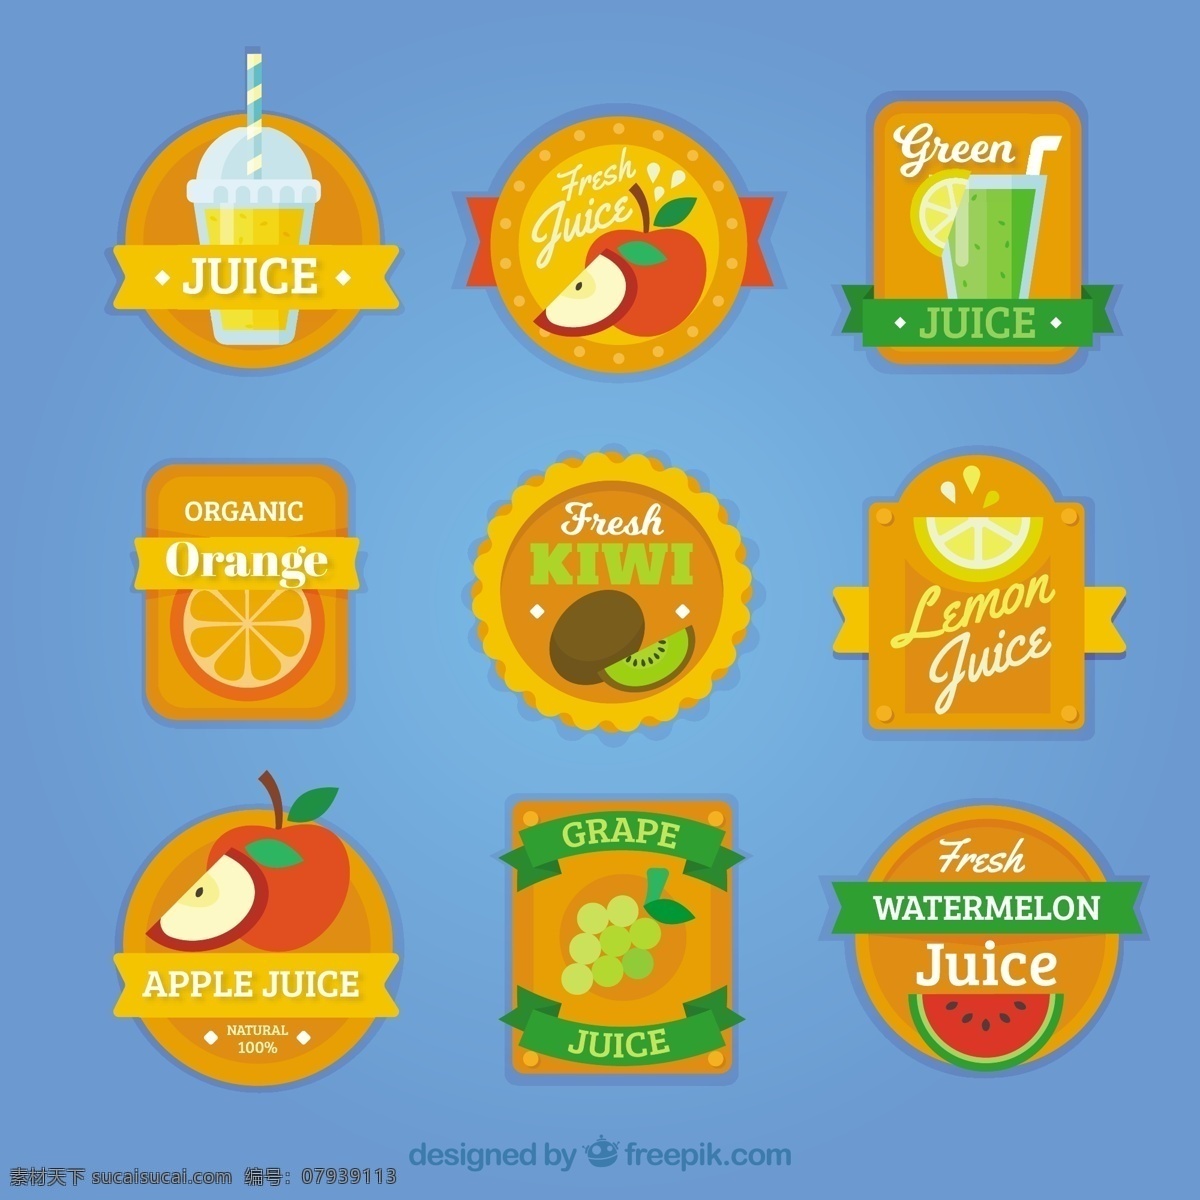 水果 片 包装 橙色 标签 采购产品食品 夏天 颜色 热带 苹果 平板 饮料 果汁 自然 健康 平面设计 贴纸 柠檬 装饰